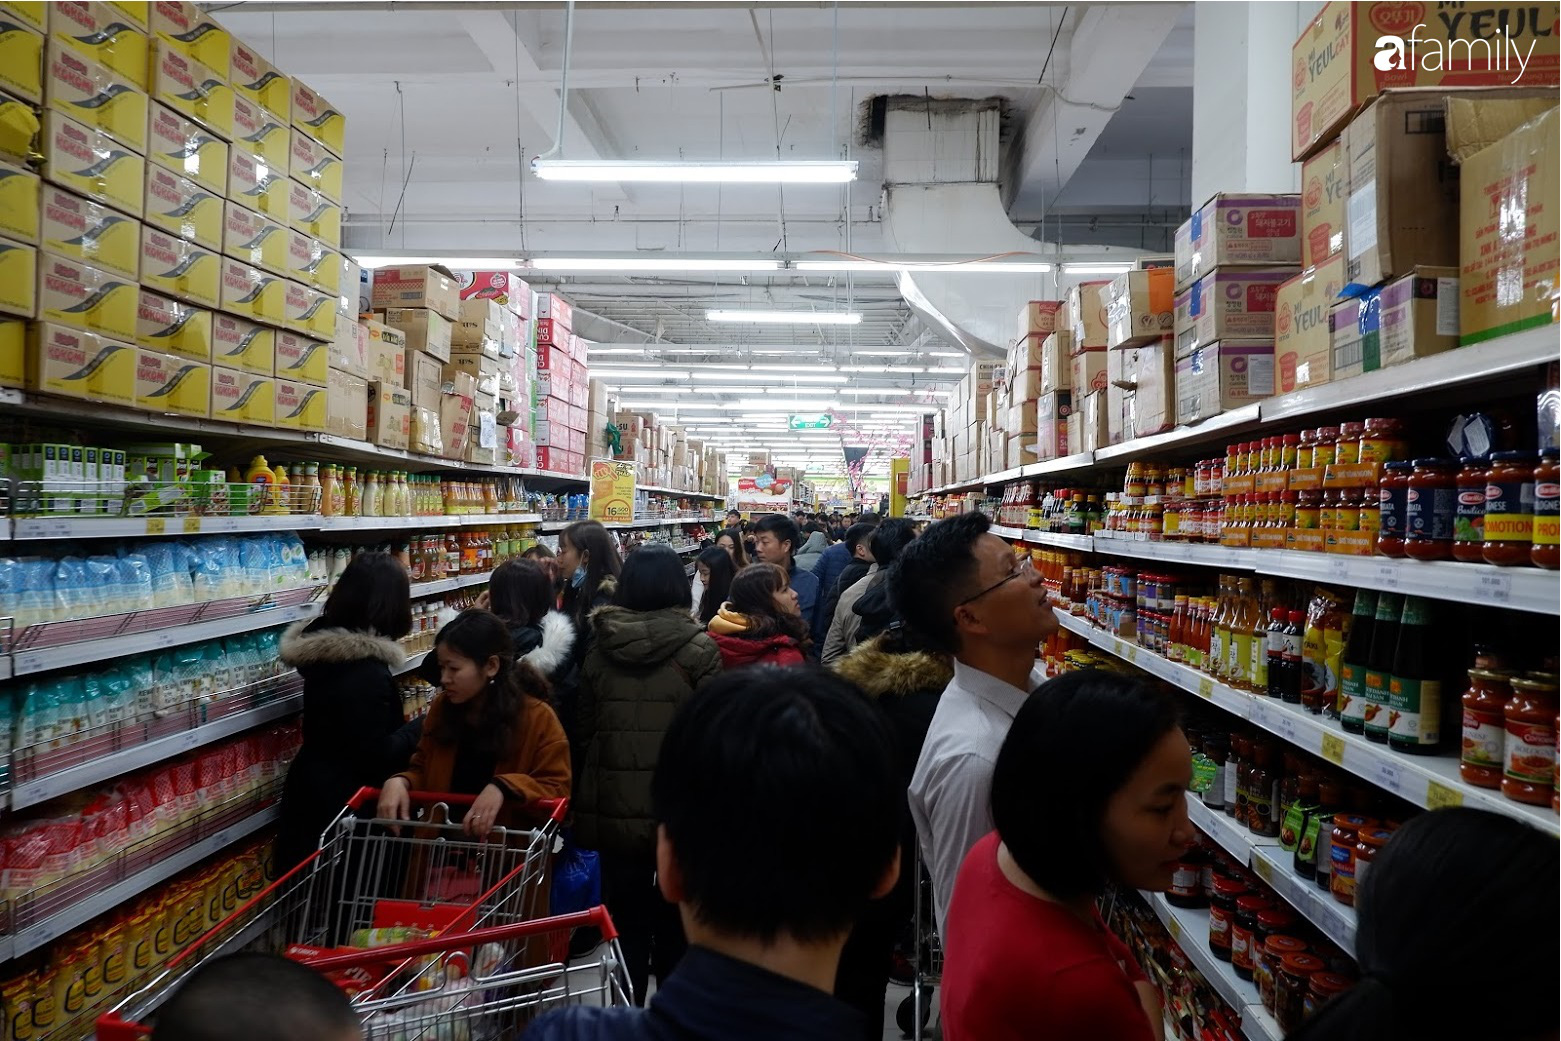 Mua sắm cực căng tại siêu thị lớn: Sản phẩm bay vèo vì giảm giá, người dân ùn ùn đứng xếp hàng thanh toán cả tiếng đồng hồ - Ảnh 5.